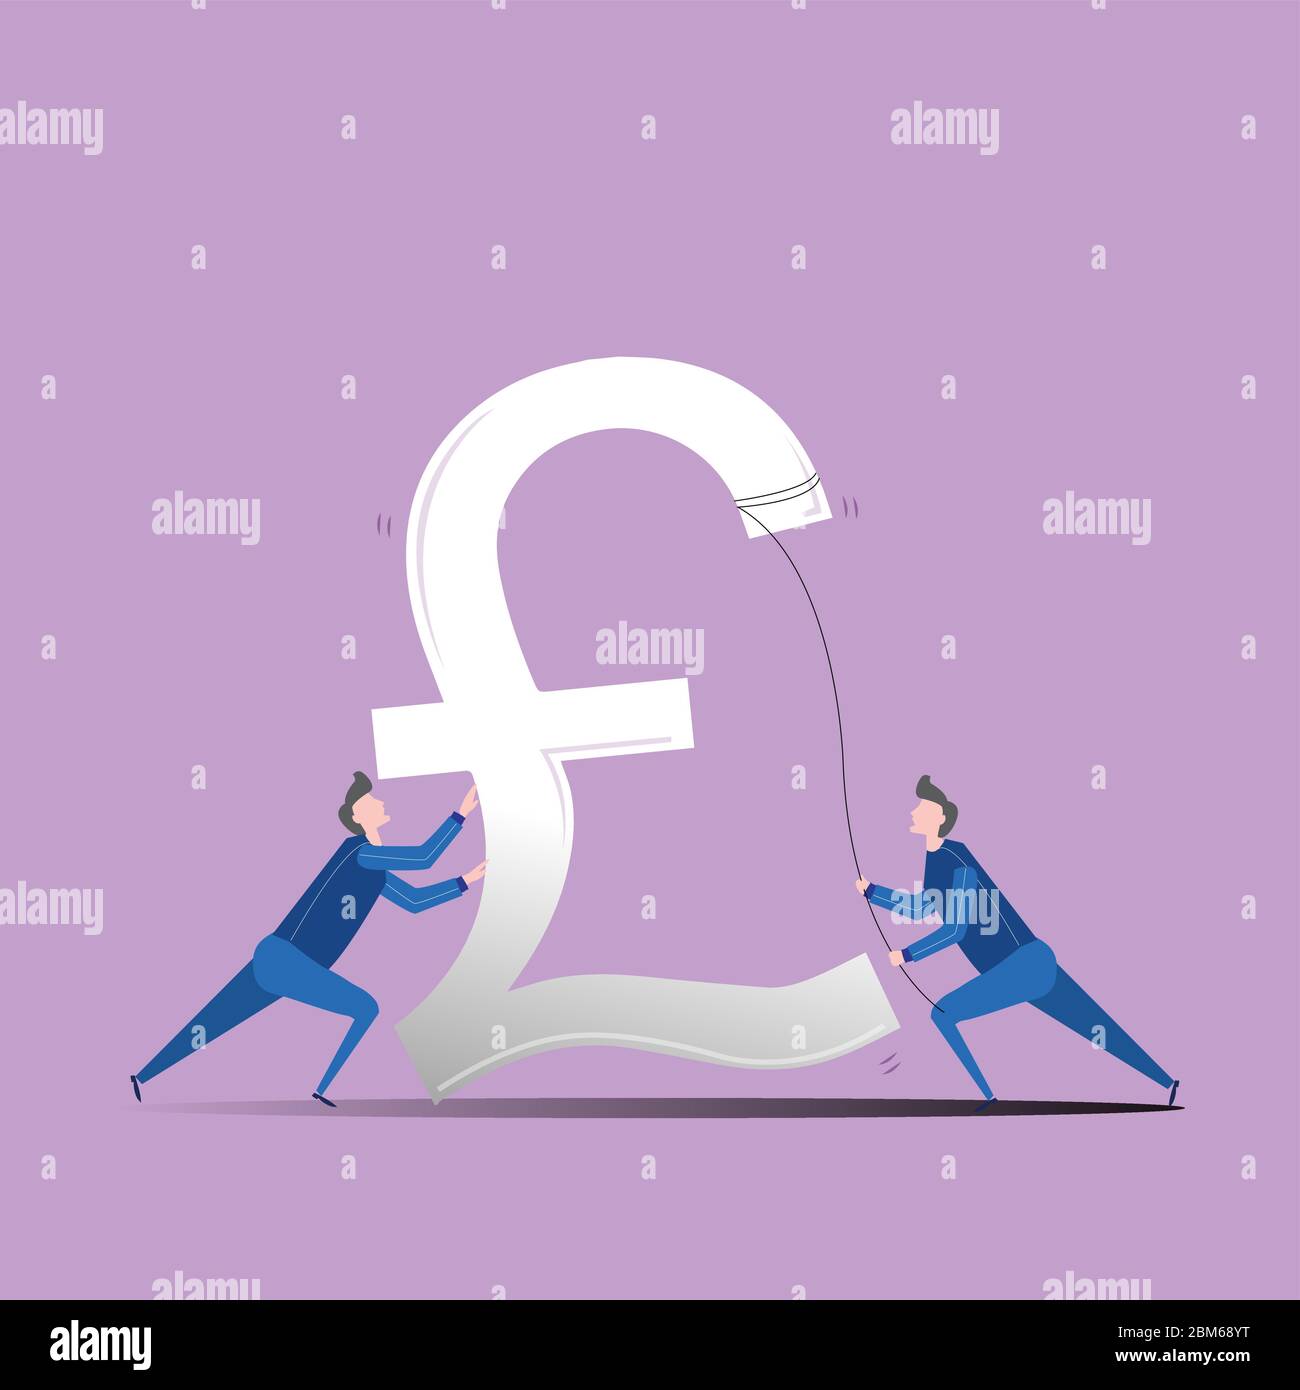 Illustration einer fallenden Währung und zwei Männer versuchen, sie zu stabilisieren. Die Abwertung des Pfund Sterling ist in der Rezession zu sehen. Stock Vektor